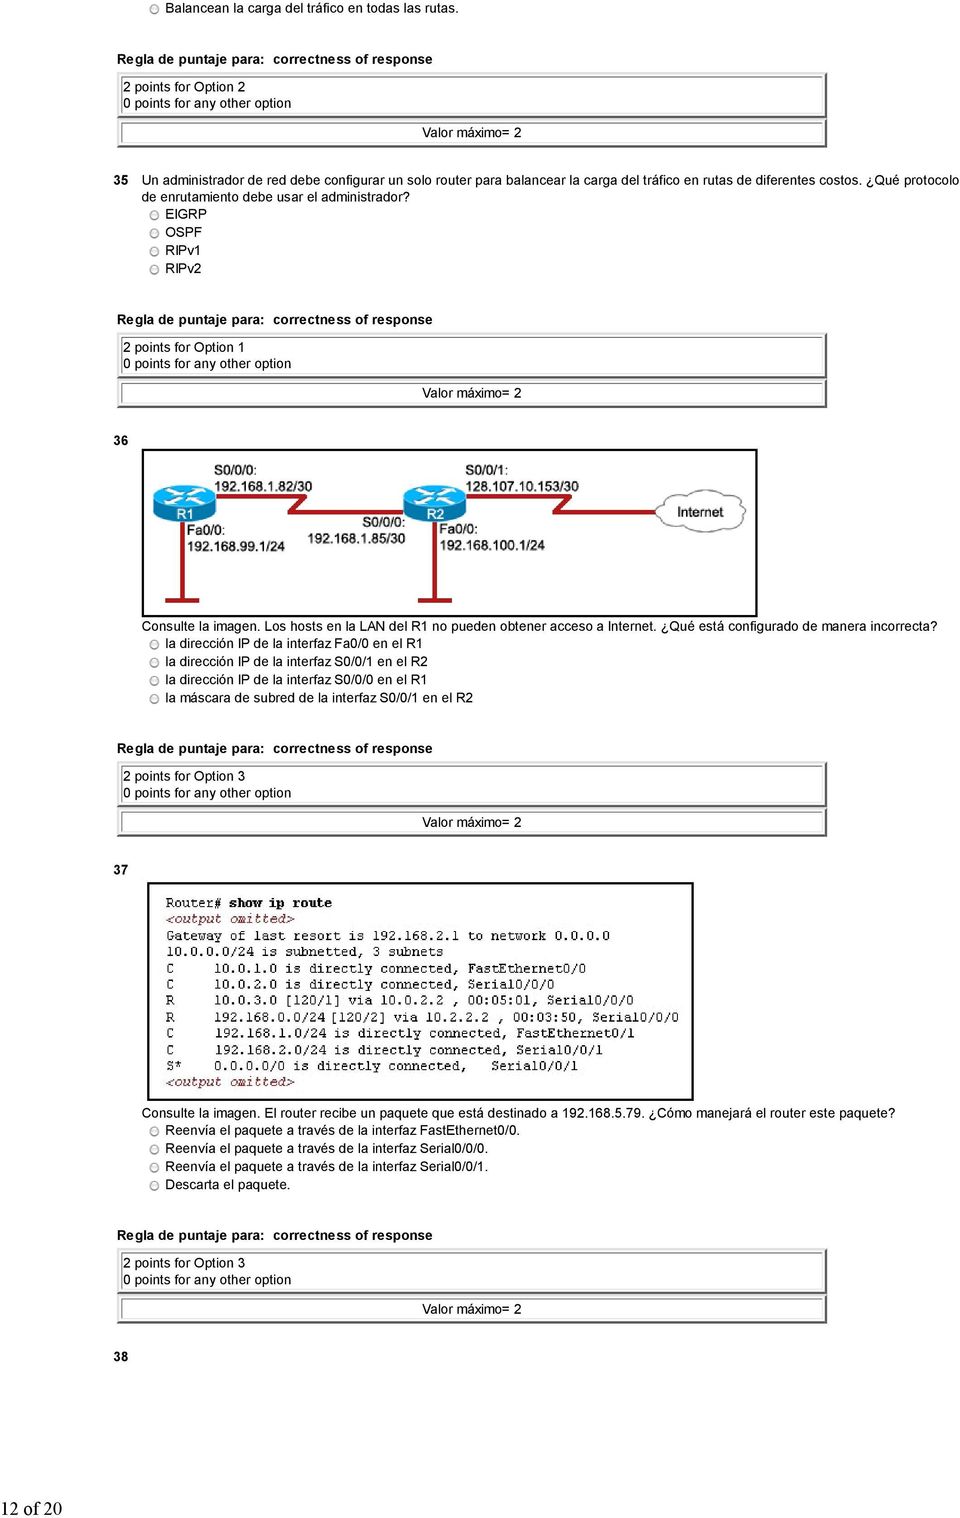 Qué protocolo de enrutamiento debe usar el administrador? EIGRP OSPF RIPv1 RIPv2 2 points for Option 1 36 Consulte la imagen. Los hosts en la LAN del R1 no pueden obtener acceso a Internet.